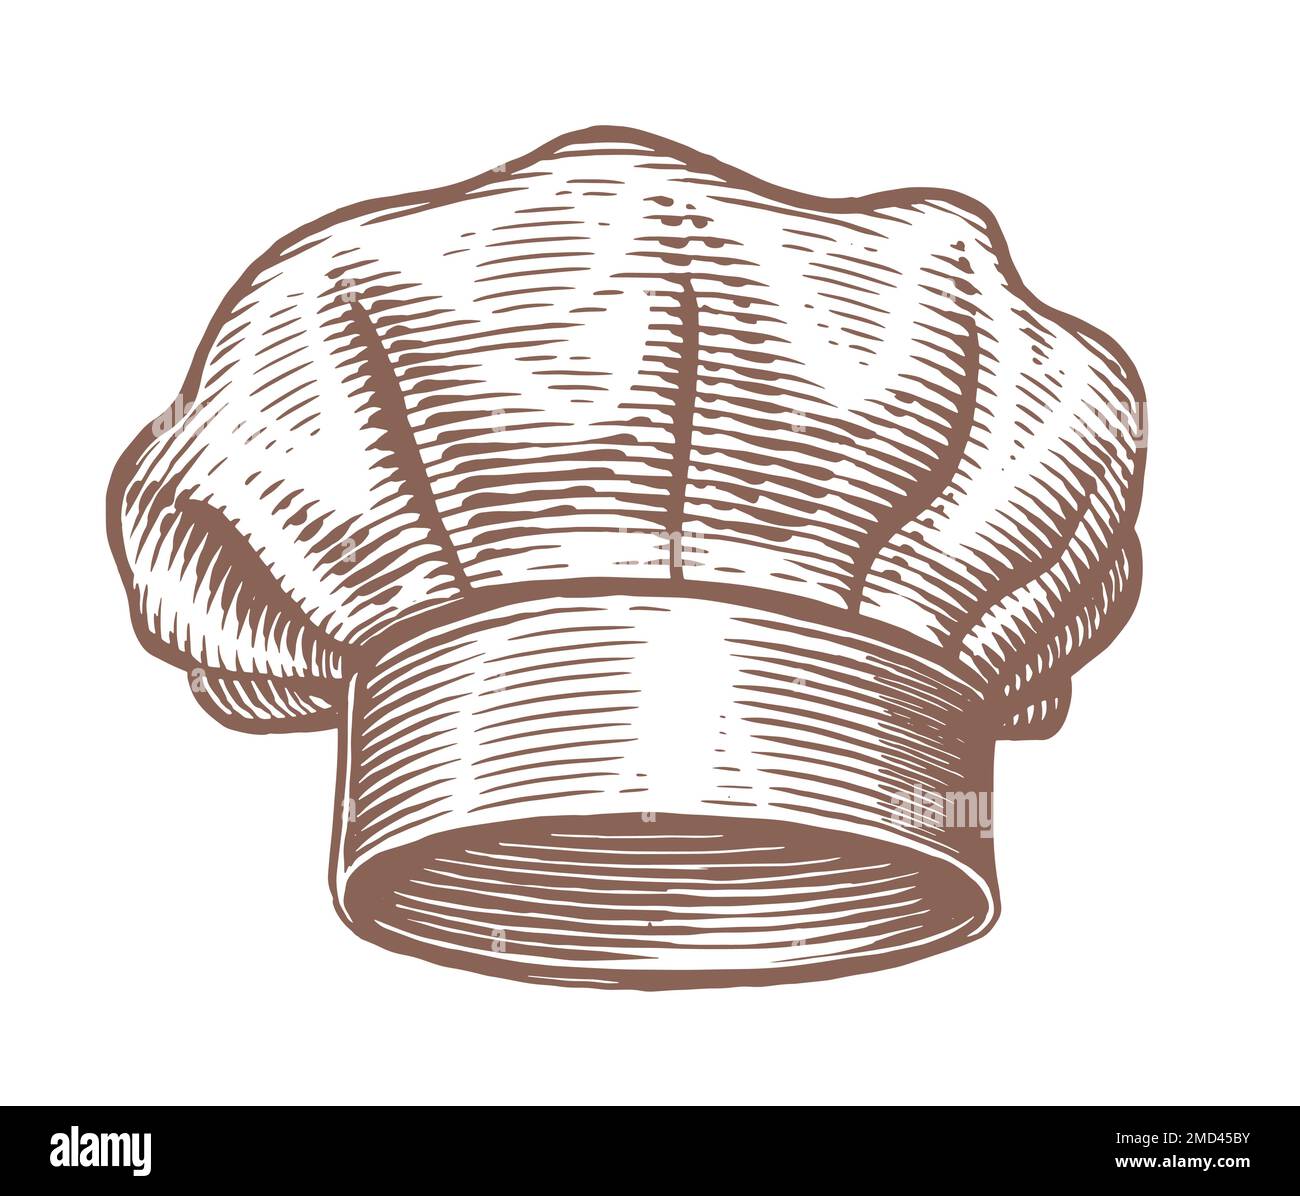 Chapeau de chef, chapeau de cuisinier style esquisse. Concept alimentaire. Design pour le menu du restaurant ou du café. Illustration vectorielle gravée Illustration de Vecteur